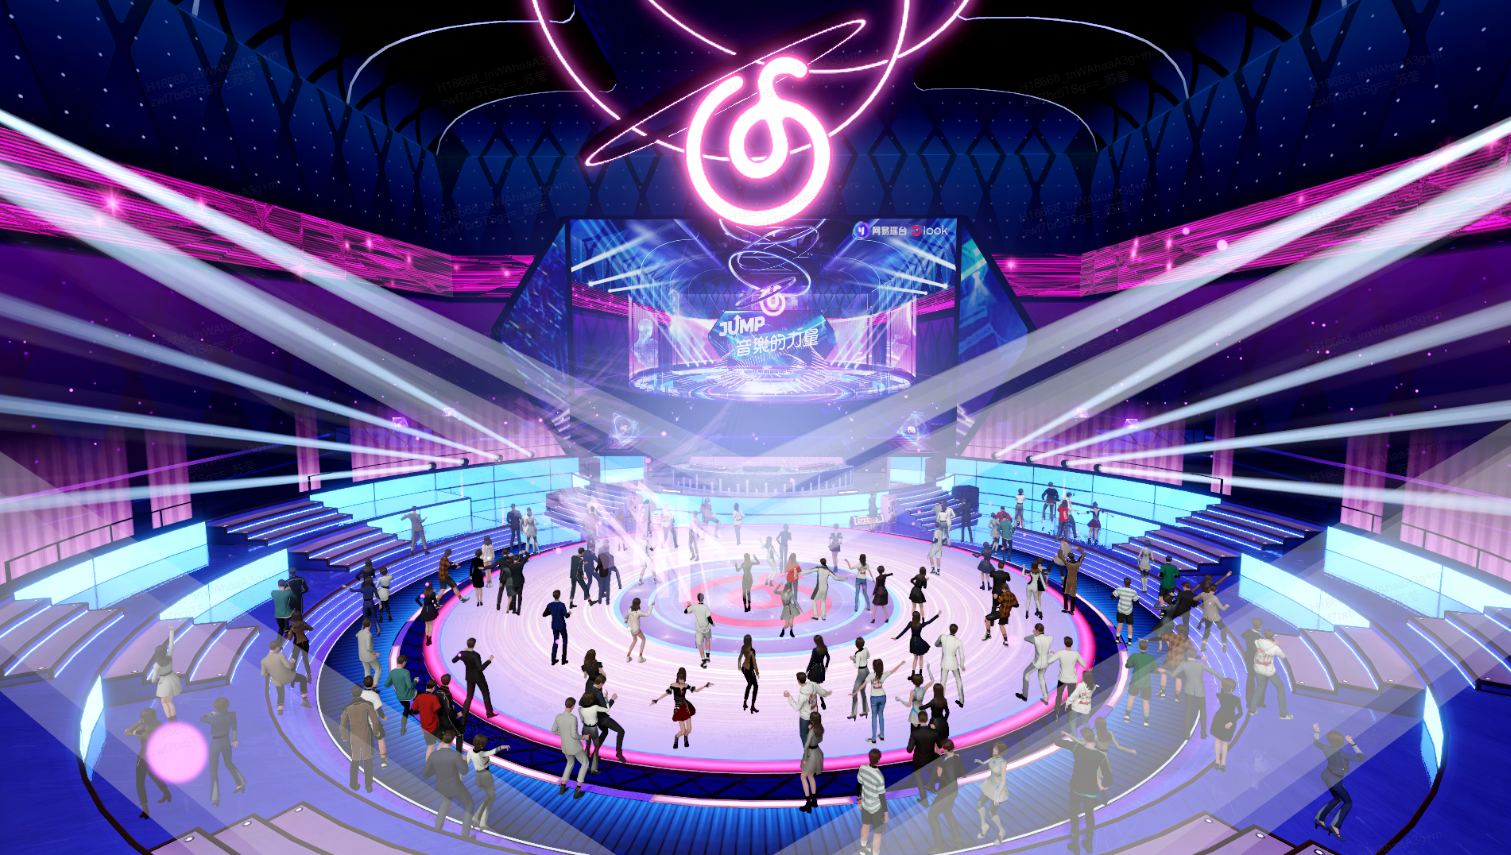 这是一张描绘虚拟音乐会场景的动画图片，舞台中央有DJ台，周围是热情跳舞的人群，场地由霓虹灯光装饰，氛围热烈。